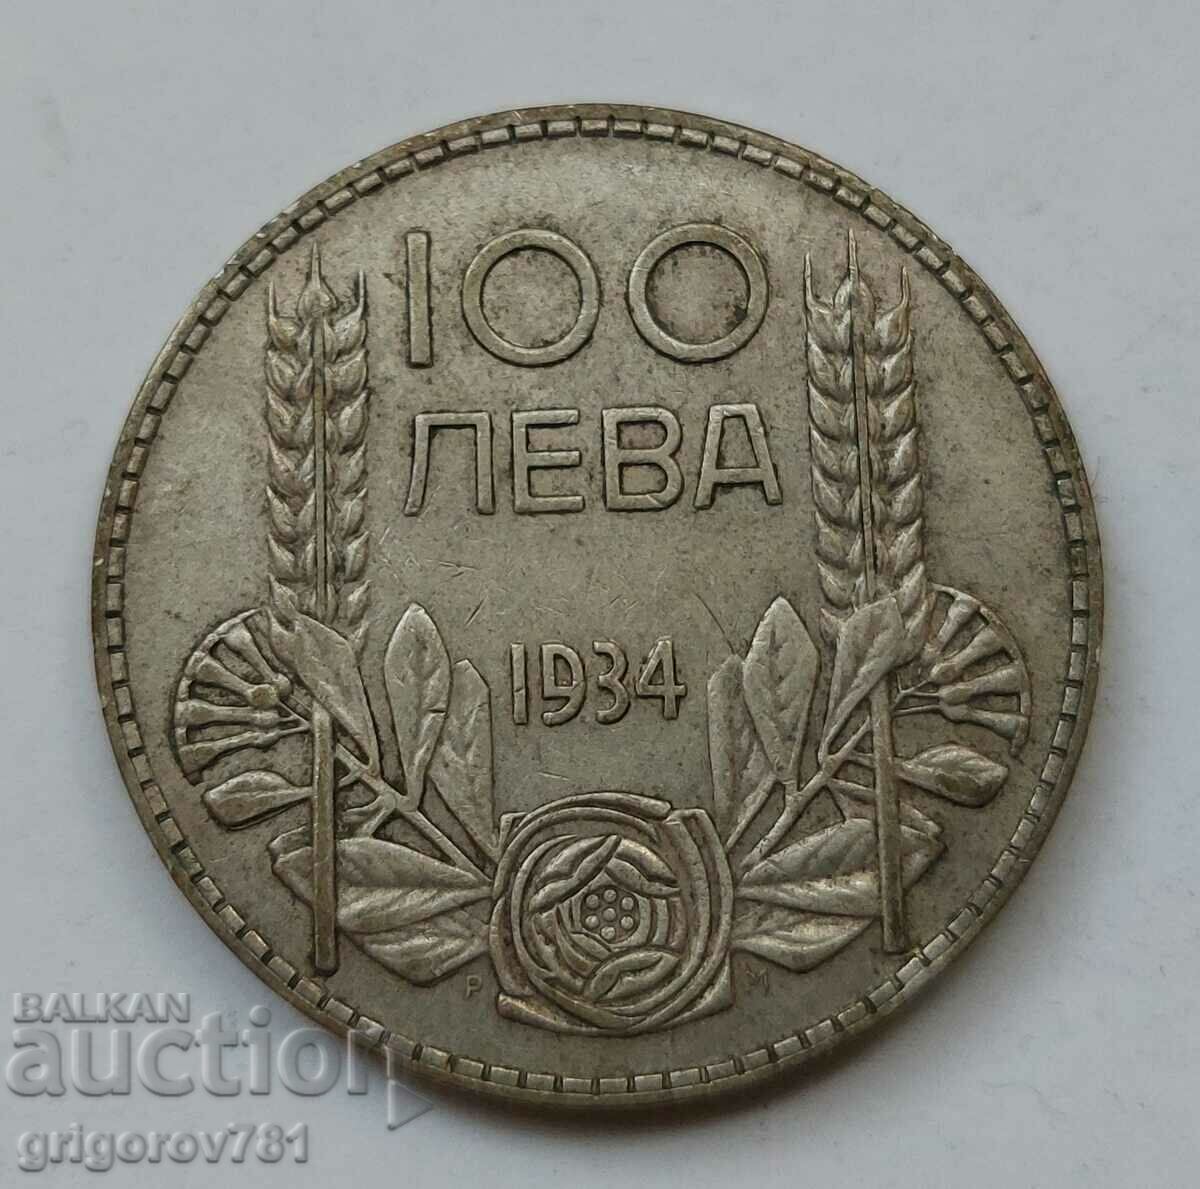 Ασήμι 100 λέβα Βουλγαρία 1934 - ασημένιο νόμισμα #93